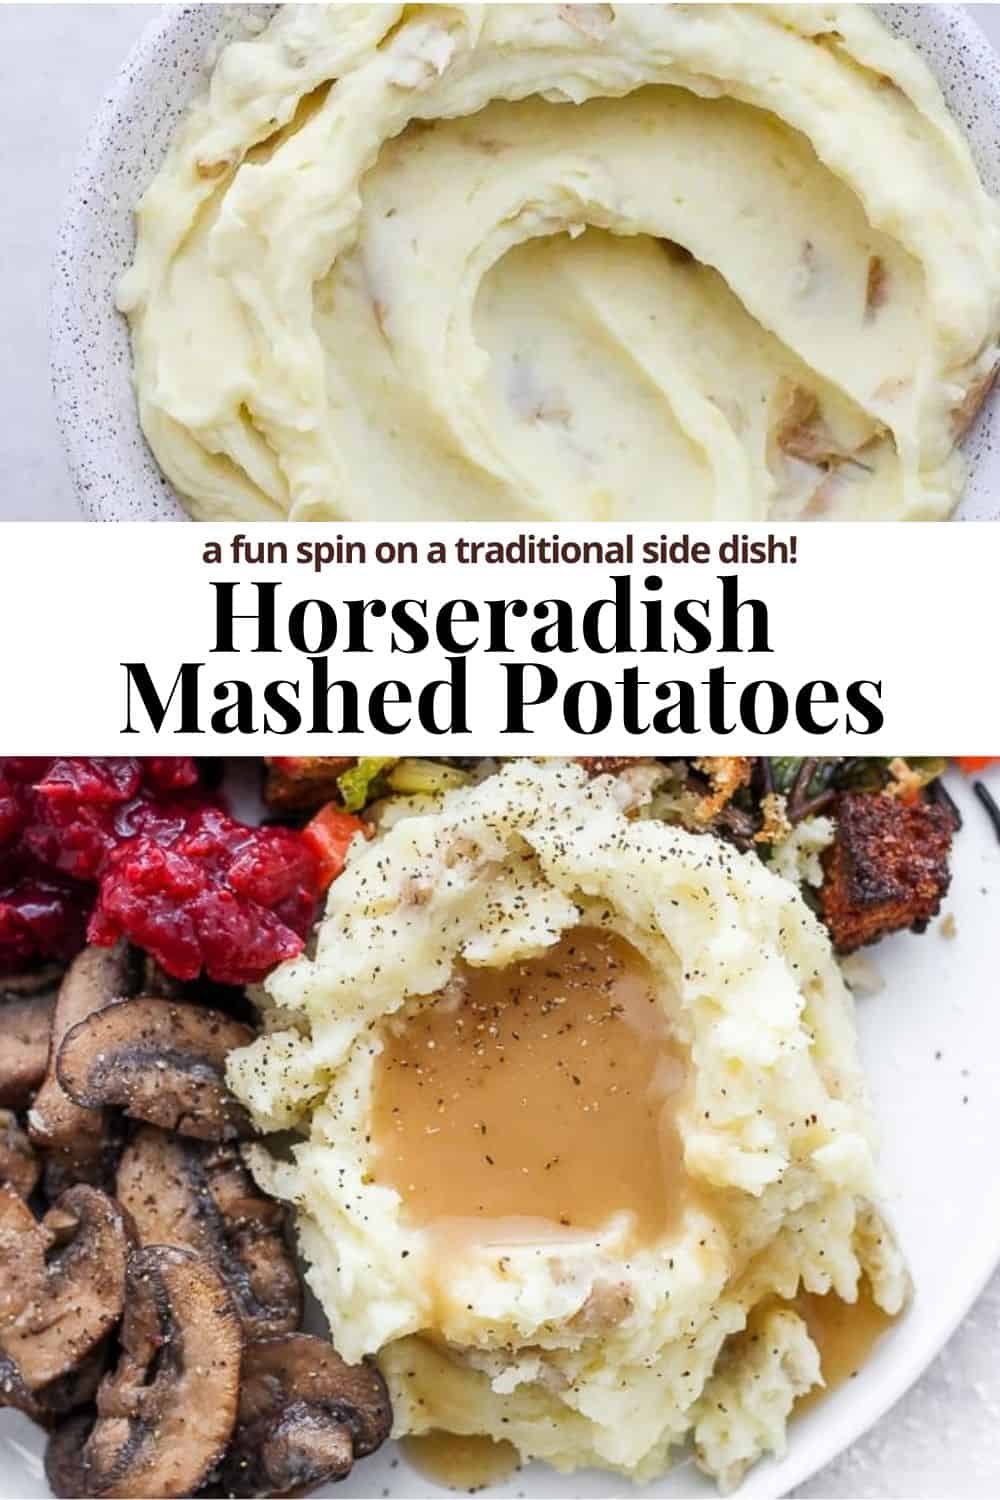 Pinterest image for horseradish mashed potatoes.